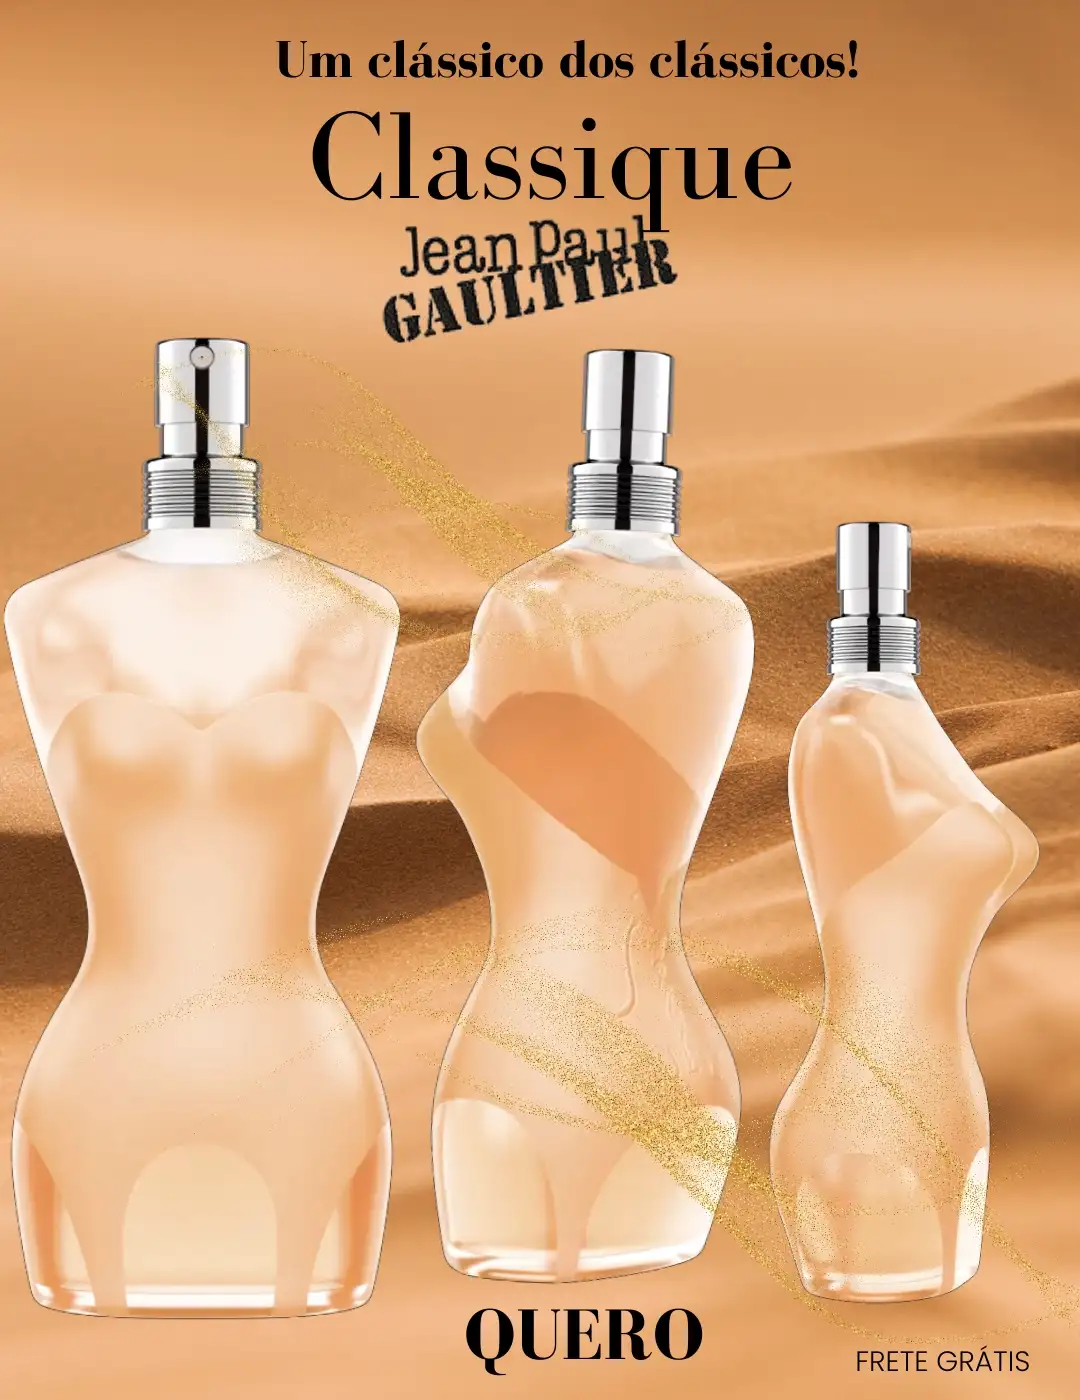 Perfume Classique